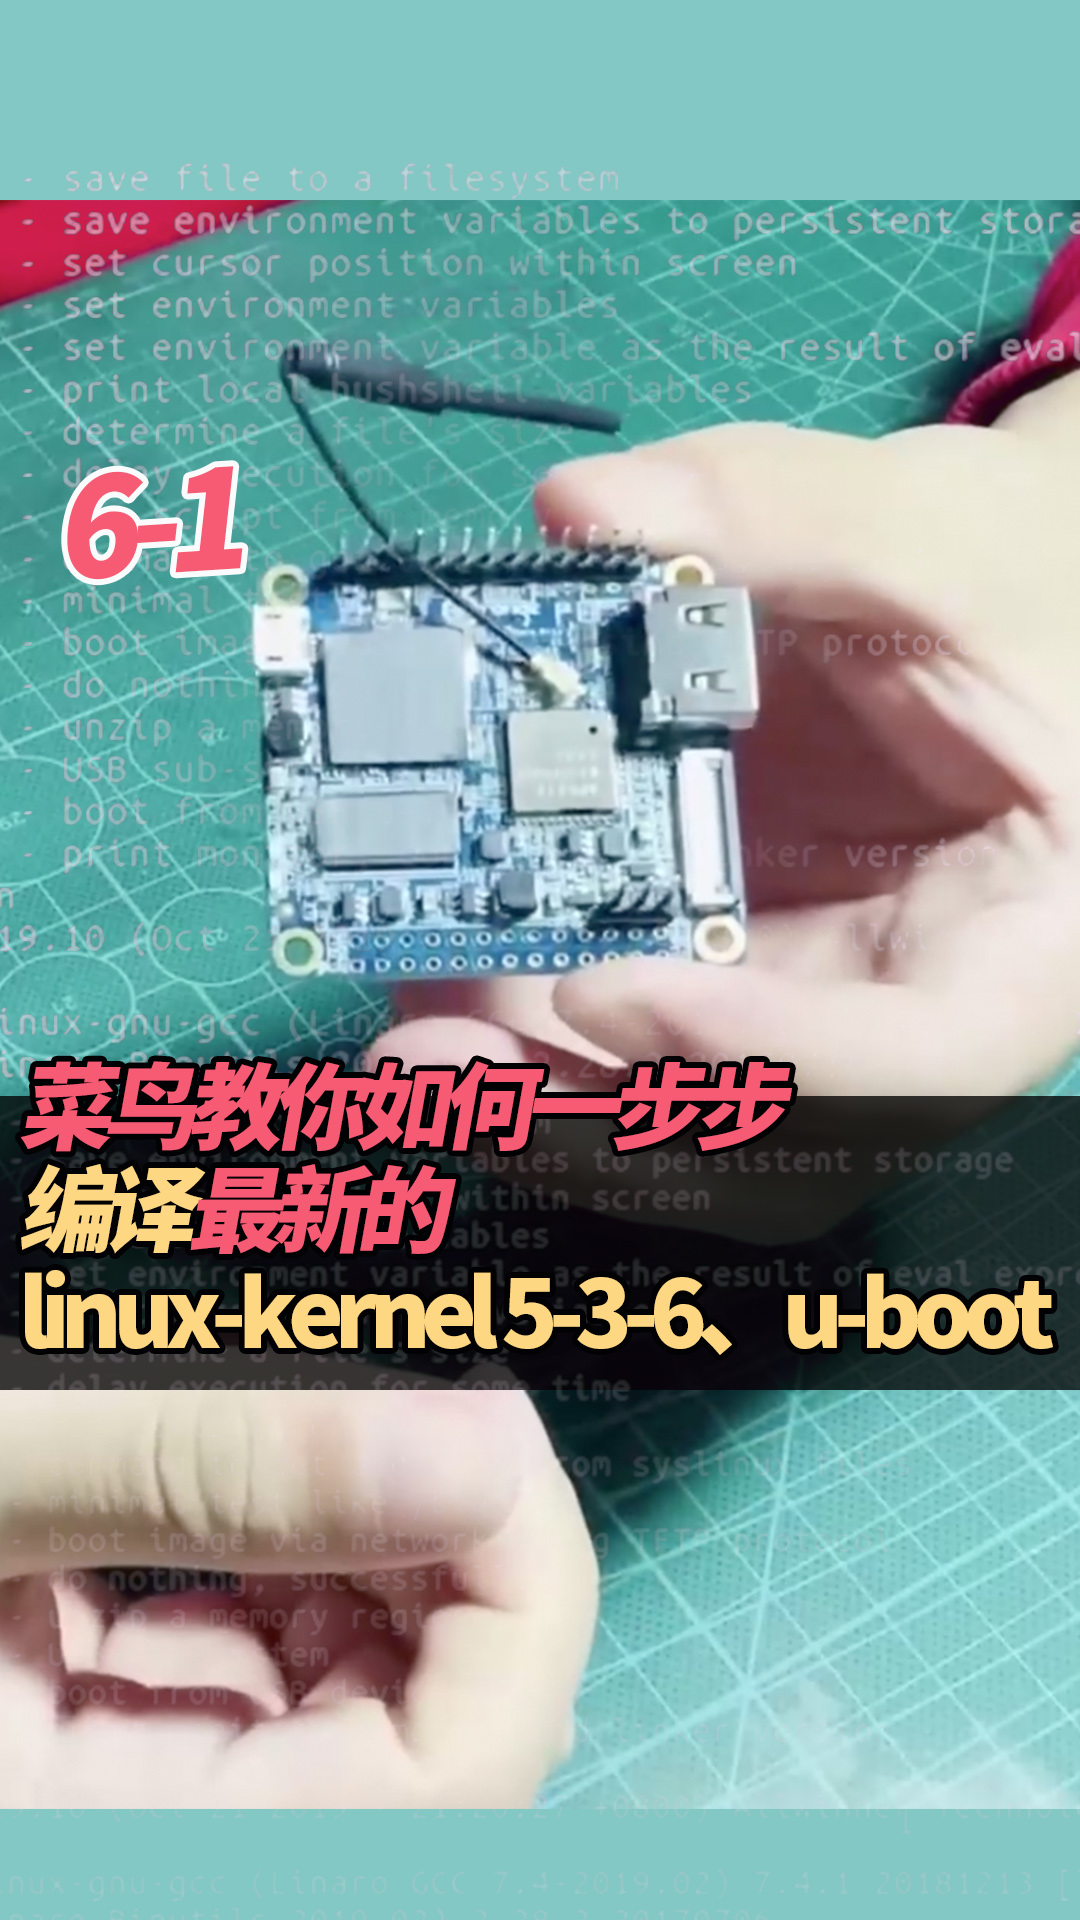 6-1菜鳥教你如何一步步編譯最新的linux-kernel 5-3-6、u-boot#linux 